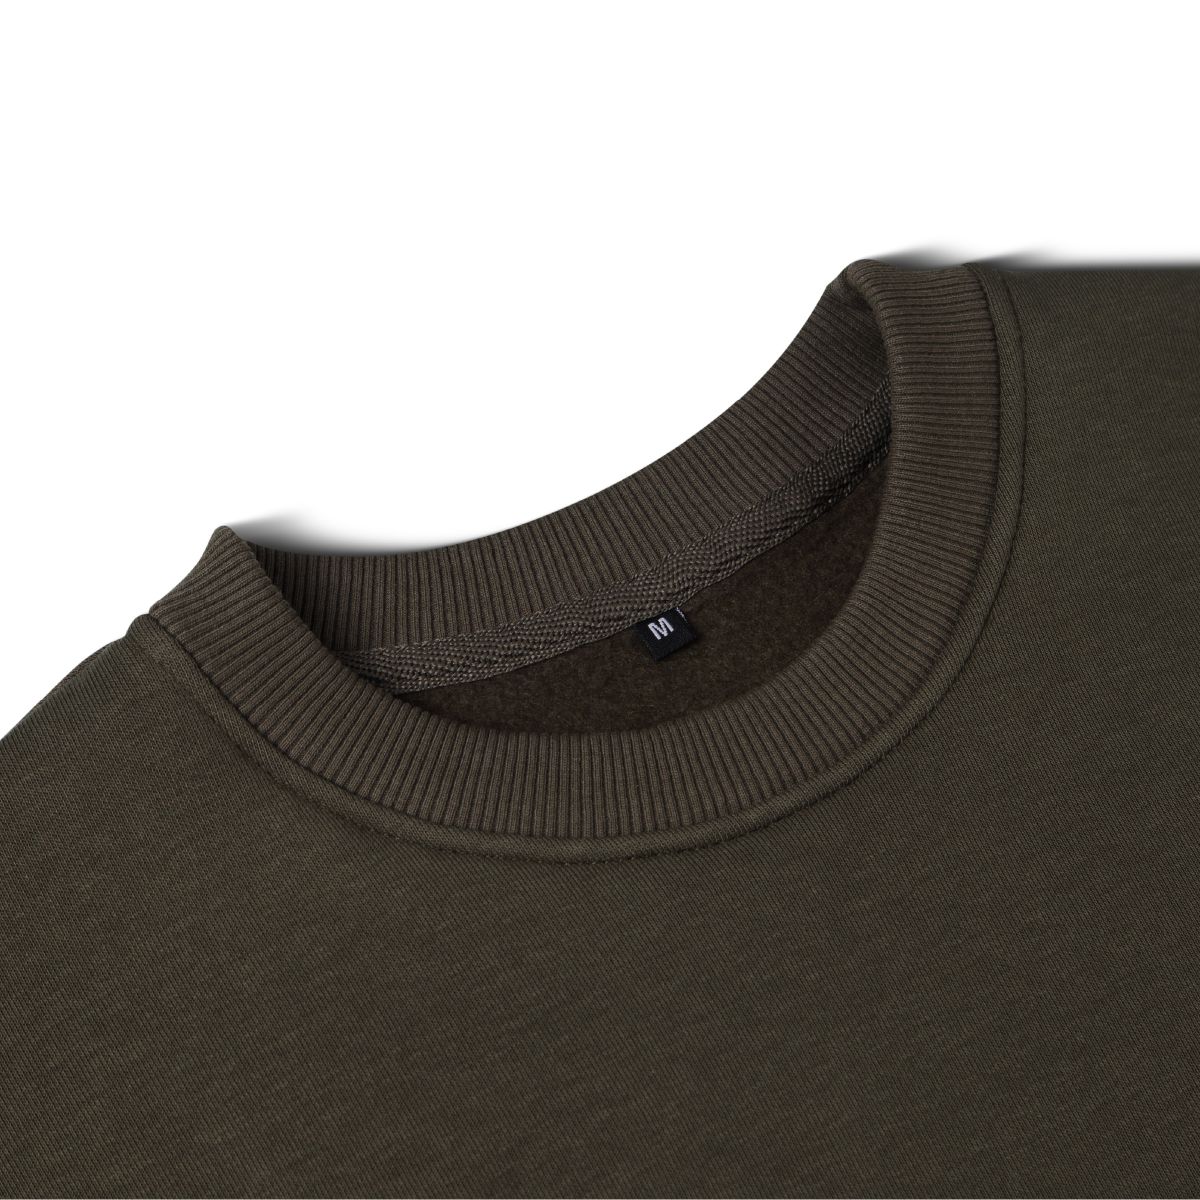 Свитшот Base Soft Sweatshirt. Свободный стиль. Цвет Олива/Olive. Размер S 7